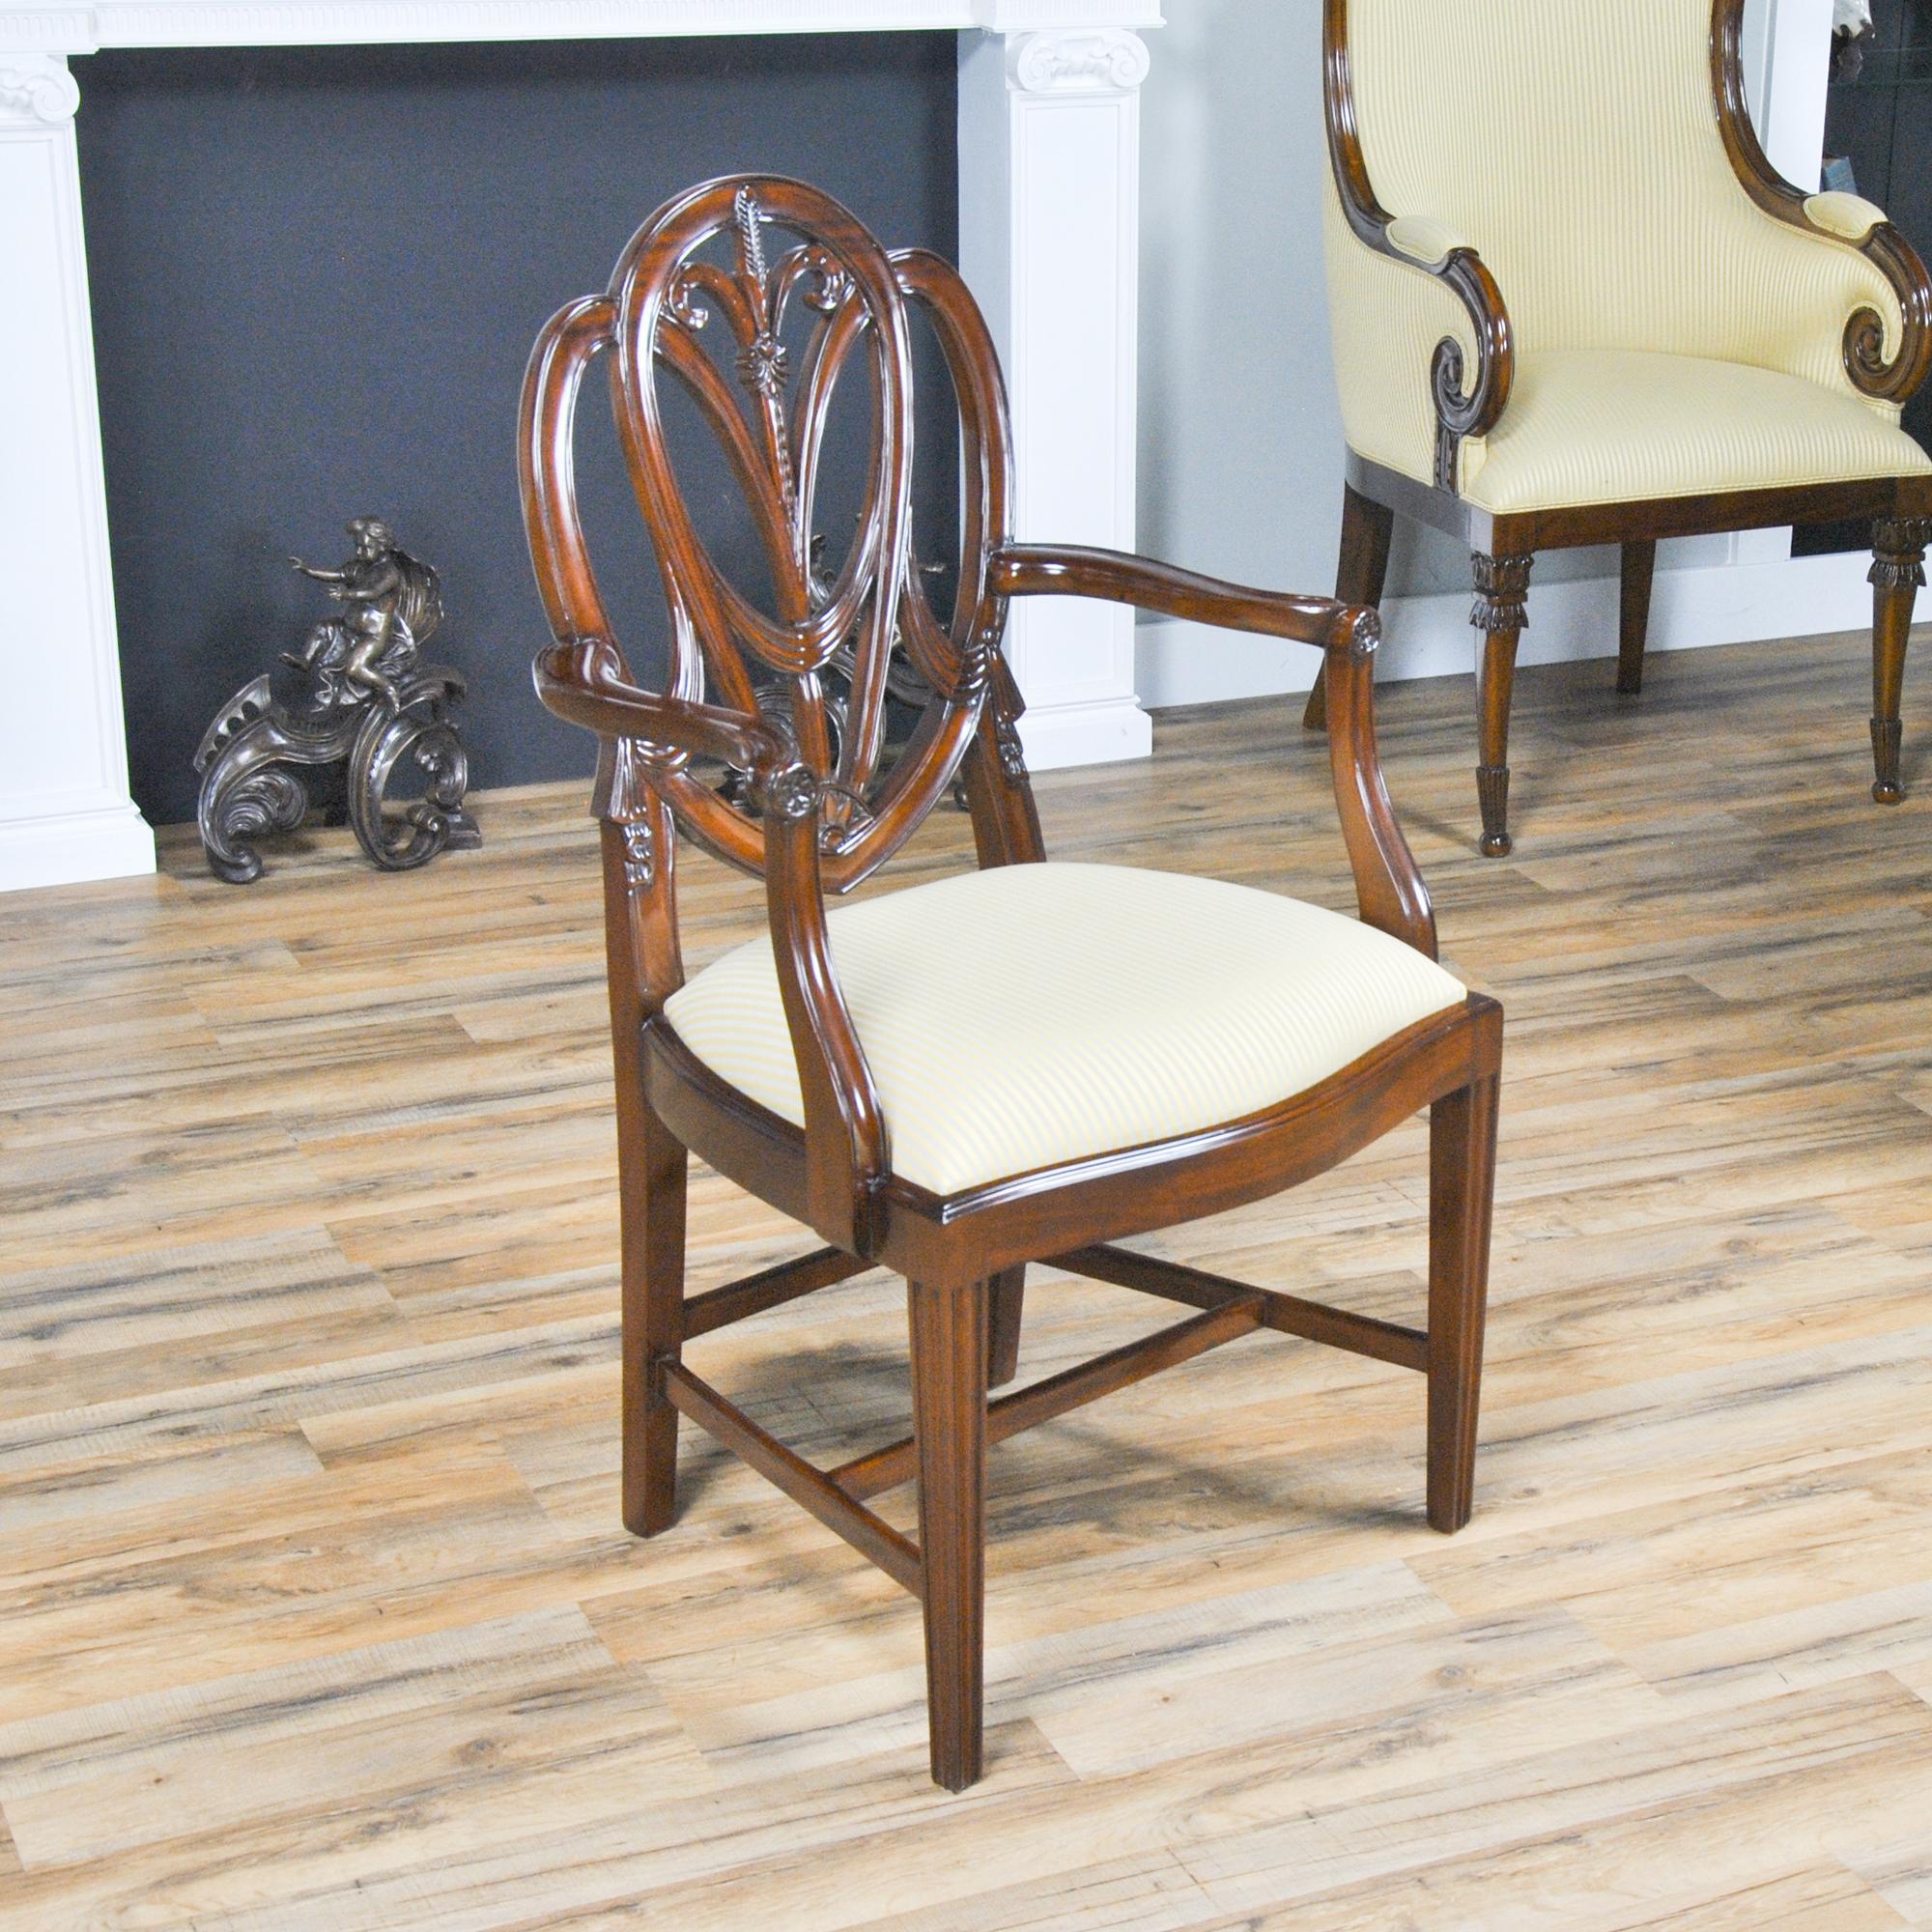 Cet ensemble de 10 chaises Tall Sweet Heart de qualité supérieure se compose de 2 chaises à accoudoir et de 8 chaises d'appoint. Chaque chaise possède un dossier élégant et stylé, sculpté dans de l'acajou massif et présentant des sculptures en drapé